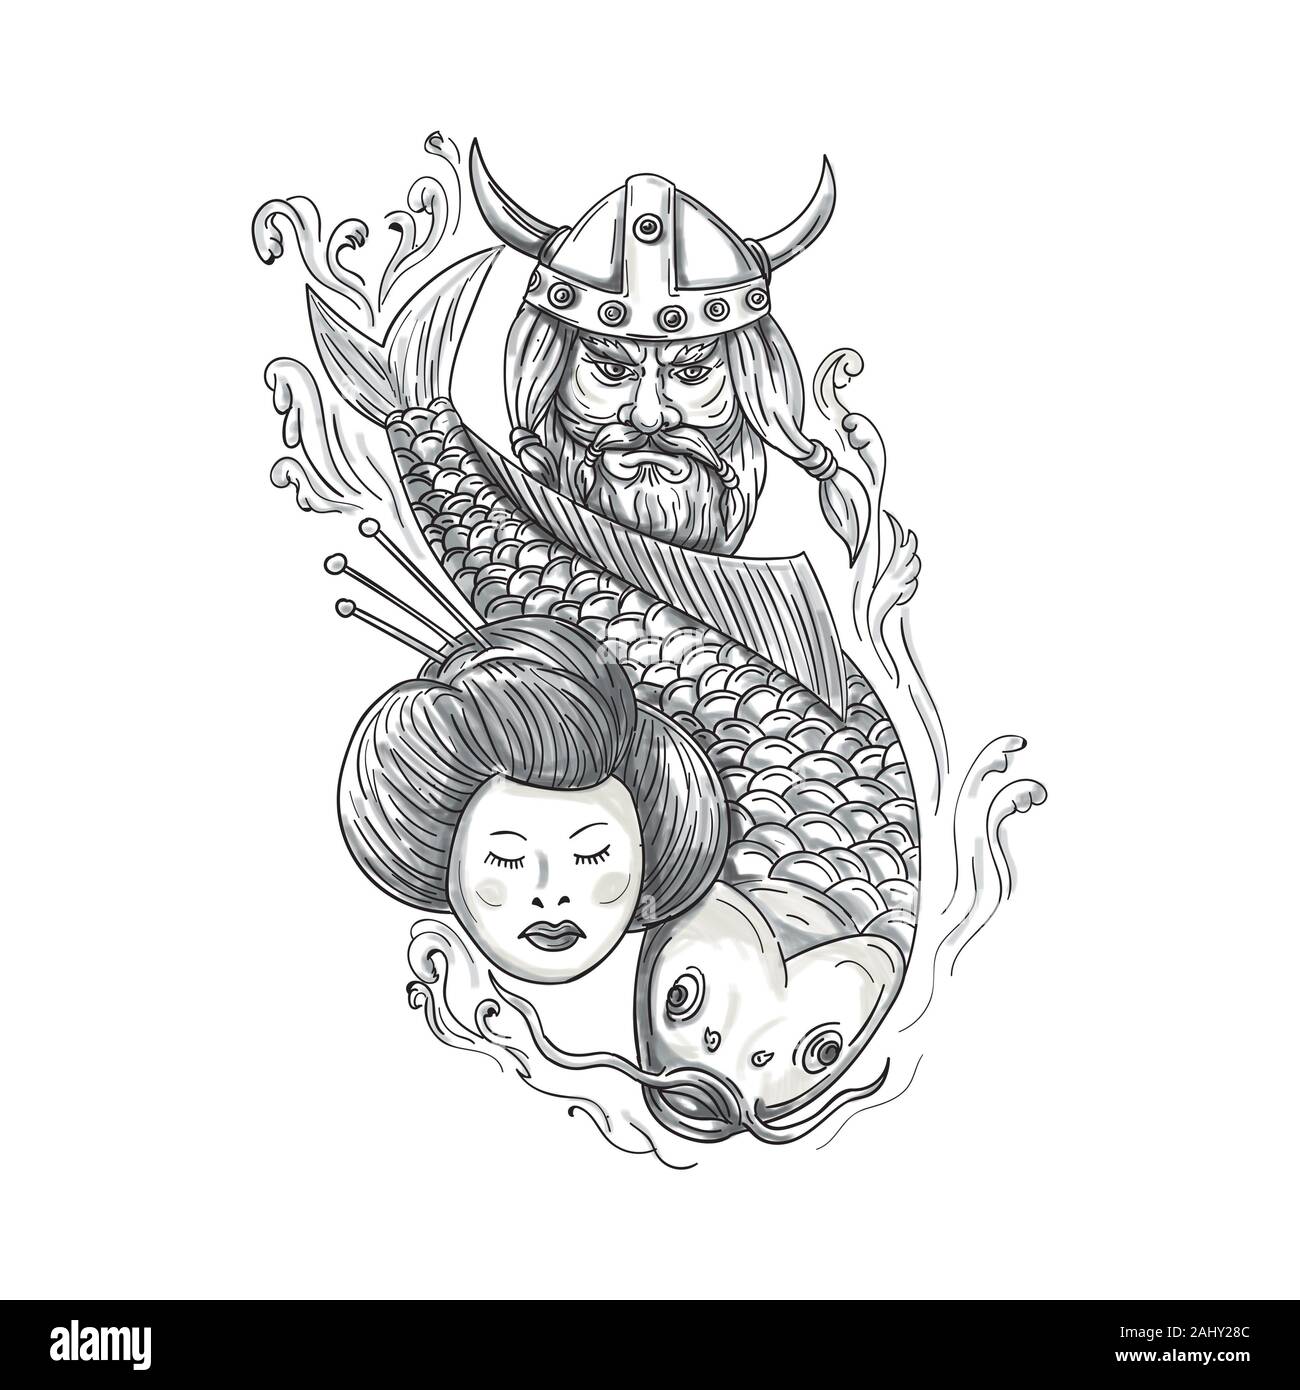 Ilustración estilo tatuaje de una cabeza de un guerrero vikingo norseman raider barbarian vistiendo horned casco con barba, carpas koi fish buceo y geisha Foto de stock